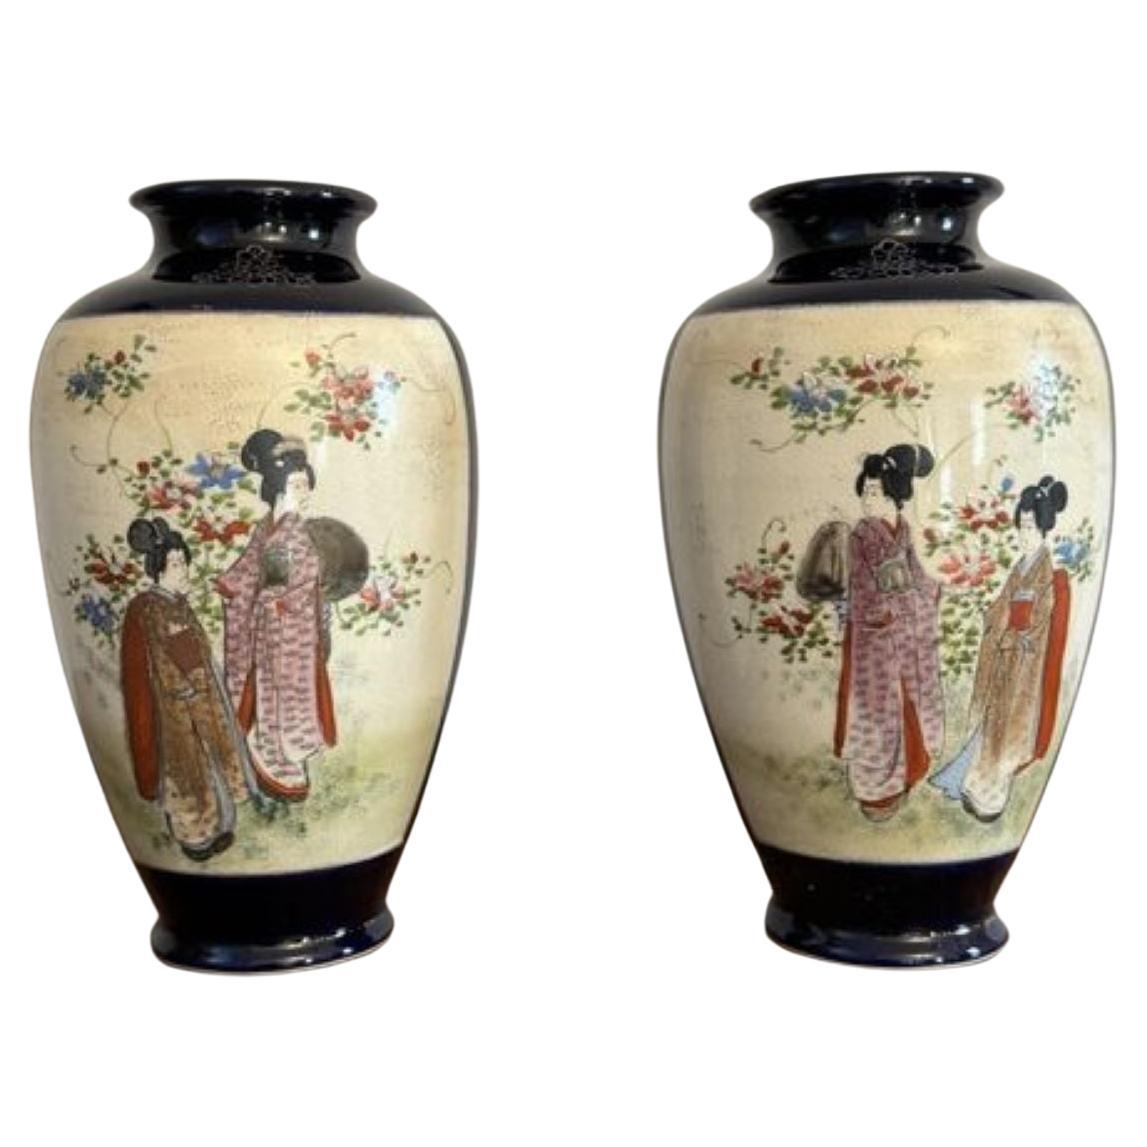 Wonderful quality pair of antique Japanese satsuma vases 